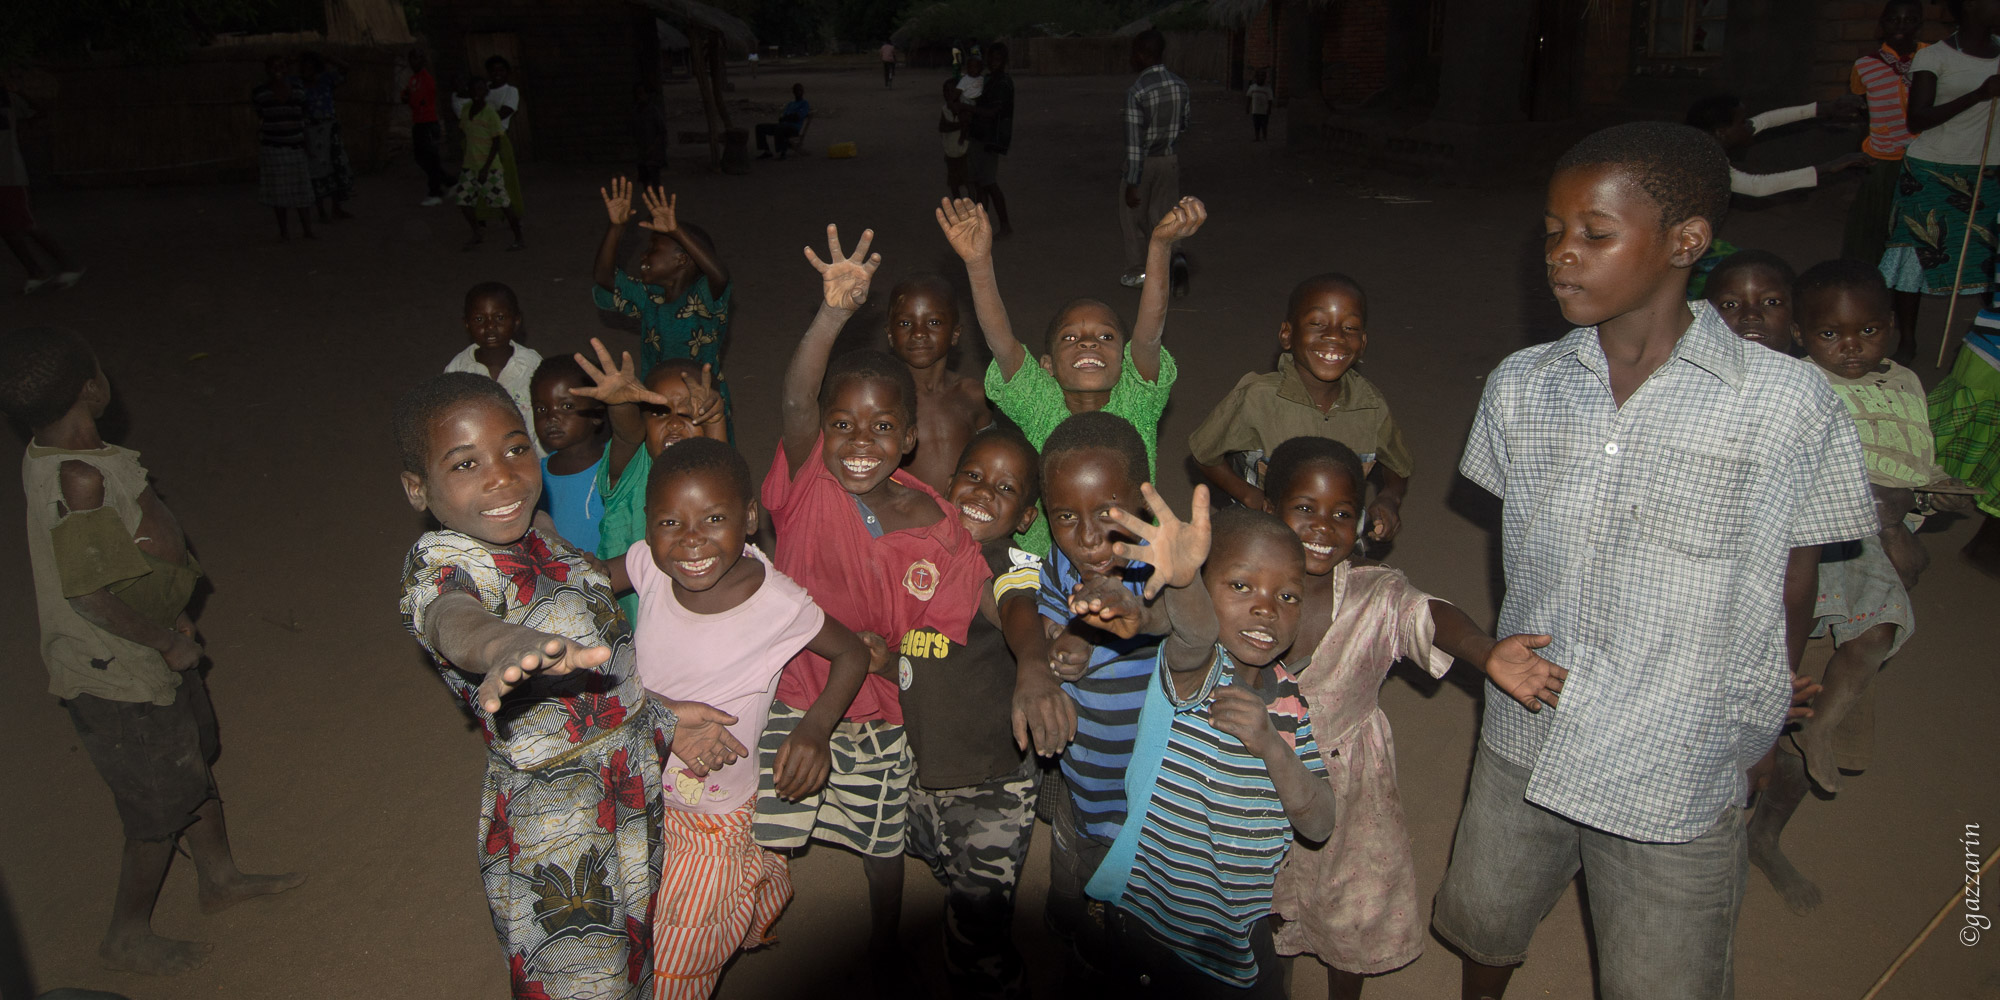 Freude im Blitzlicht (am Malawisee)